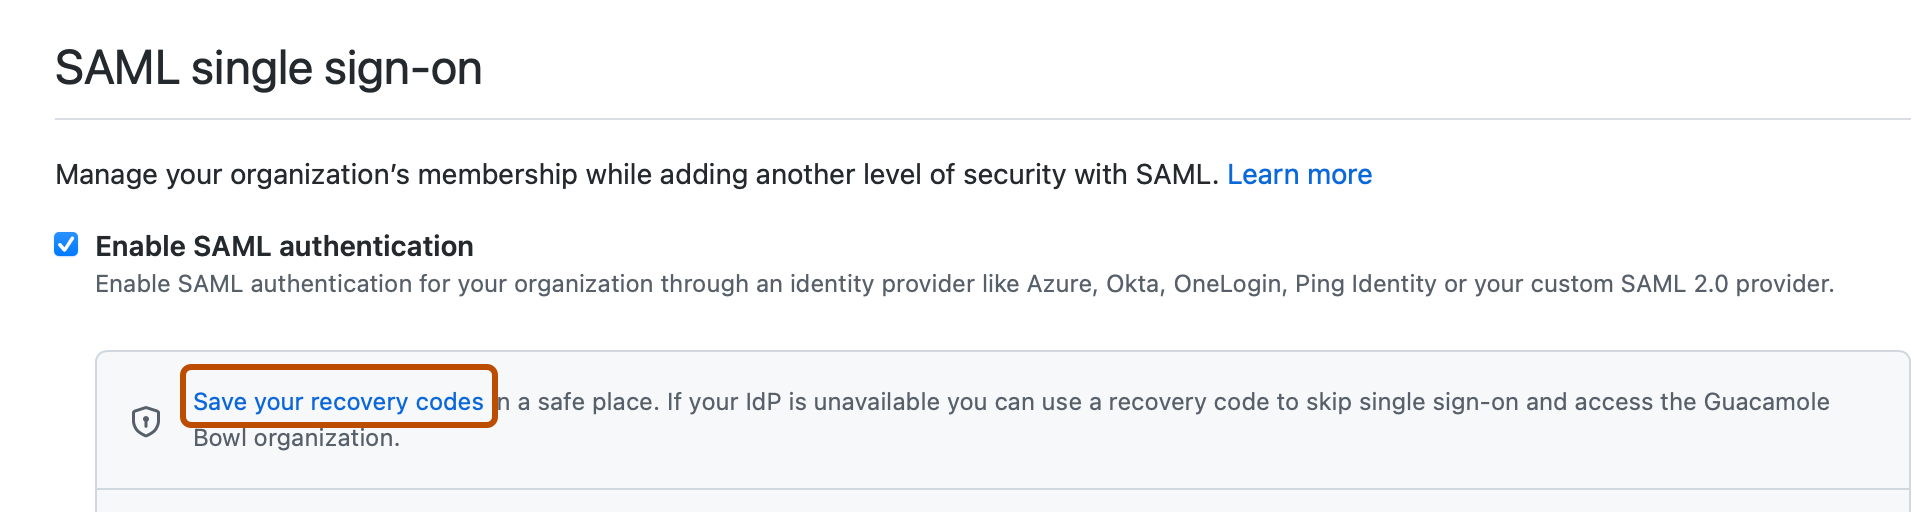 Captura de pantalla de la sección "Inicio de sesión único de SAML". Un vínculo con la etiqueta "Guardar los códigos de recuperación" está resaltado con un contorno naranja.